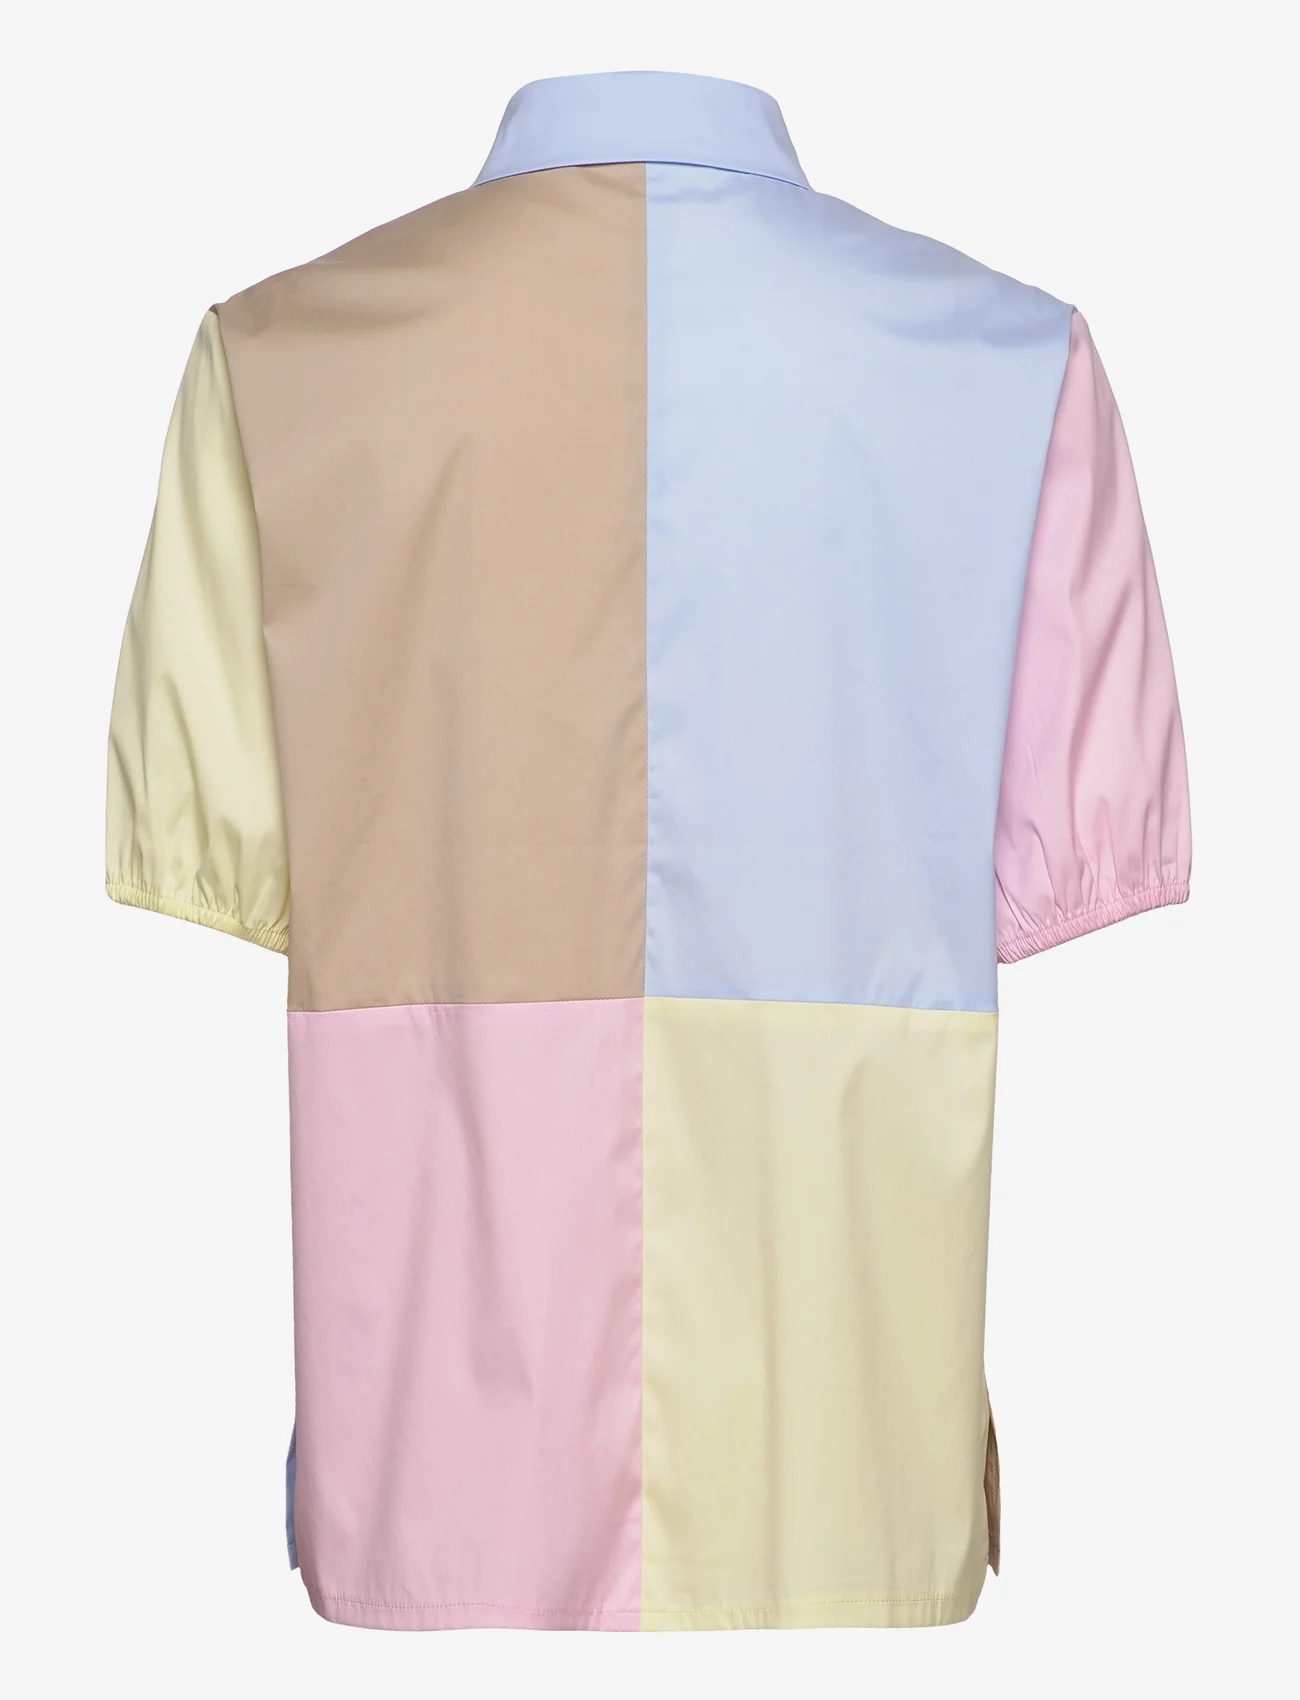 Naja Lauf - ROSALIA SHIRT - kurzärmlige hemden - rose-blue-yellow-beige - 1